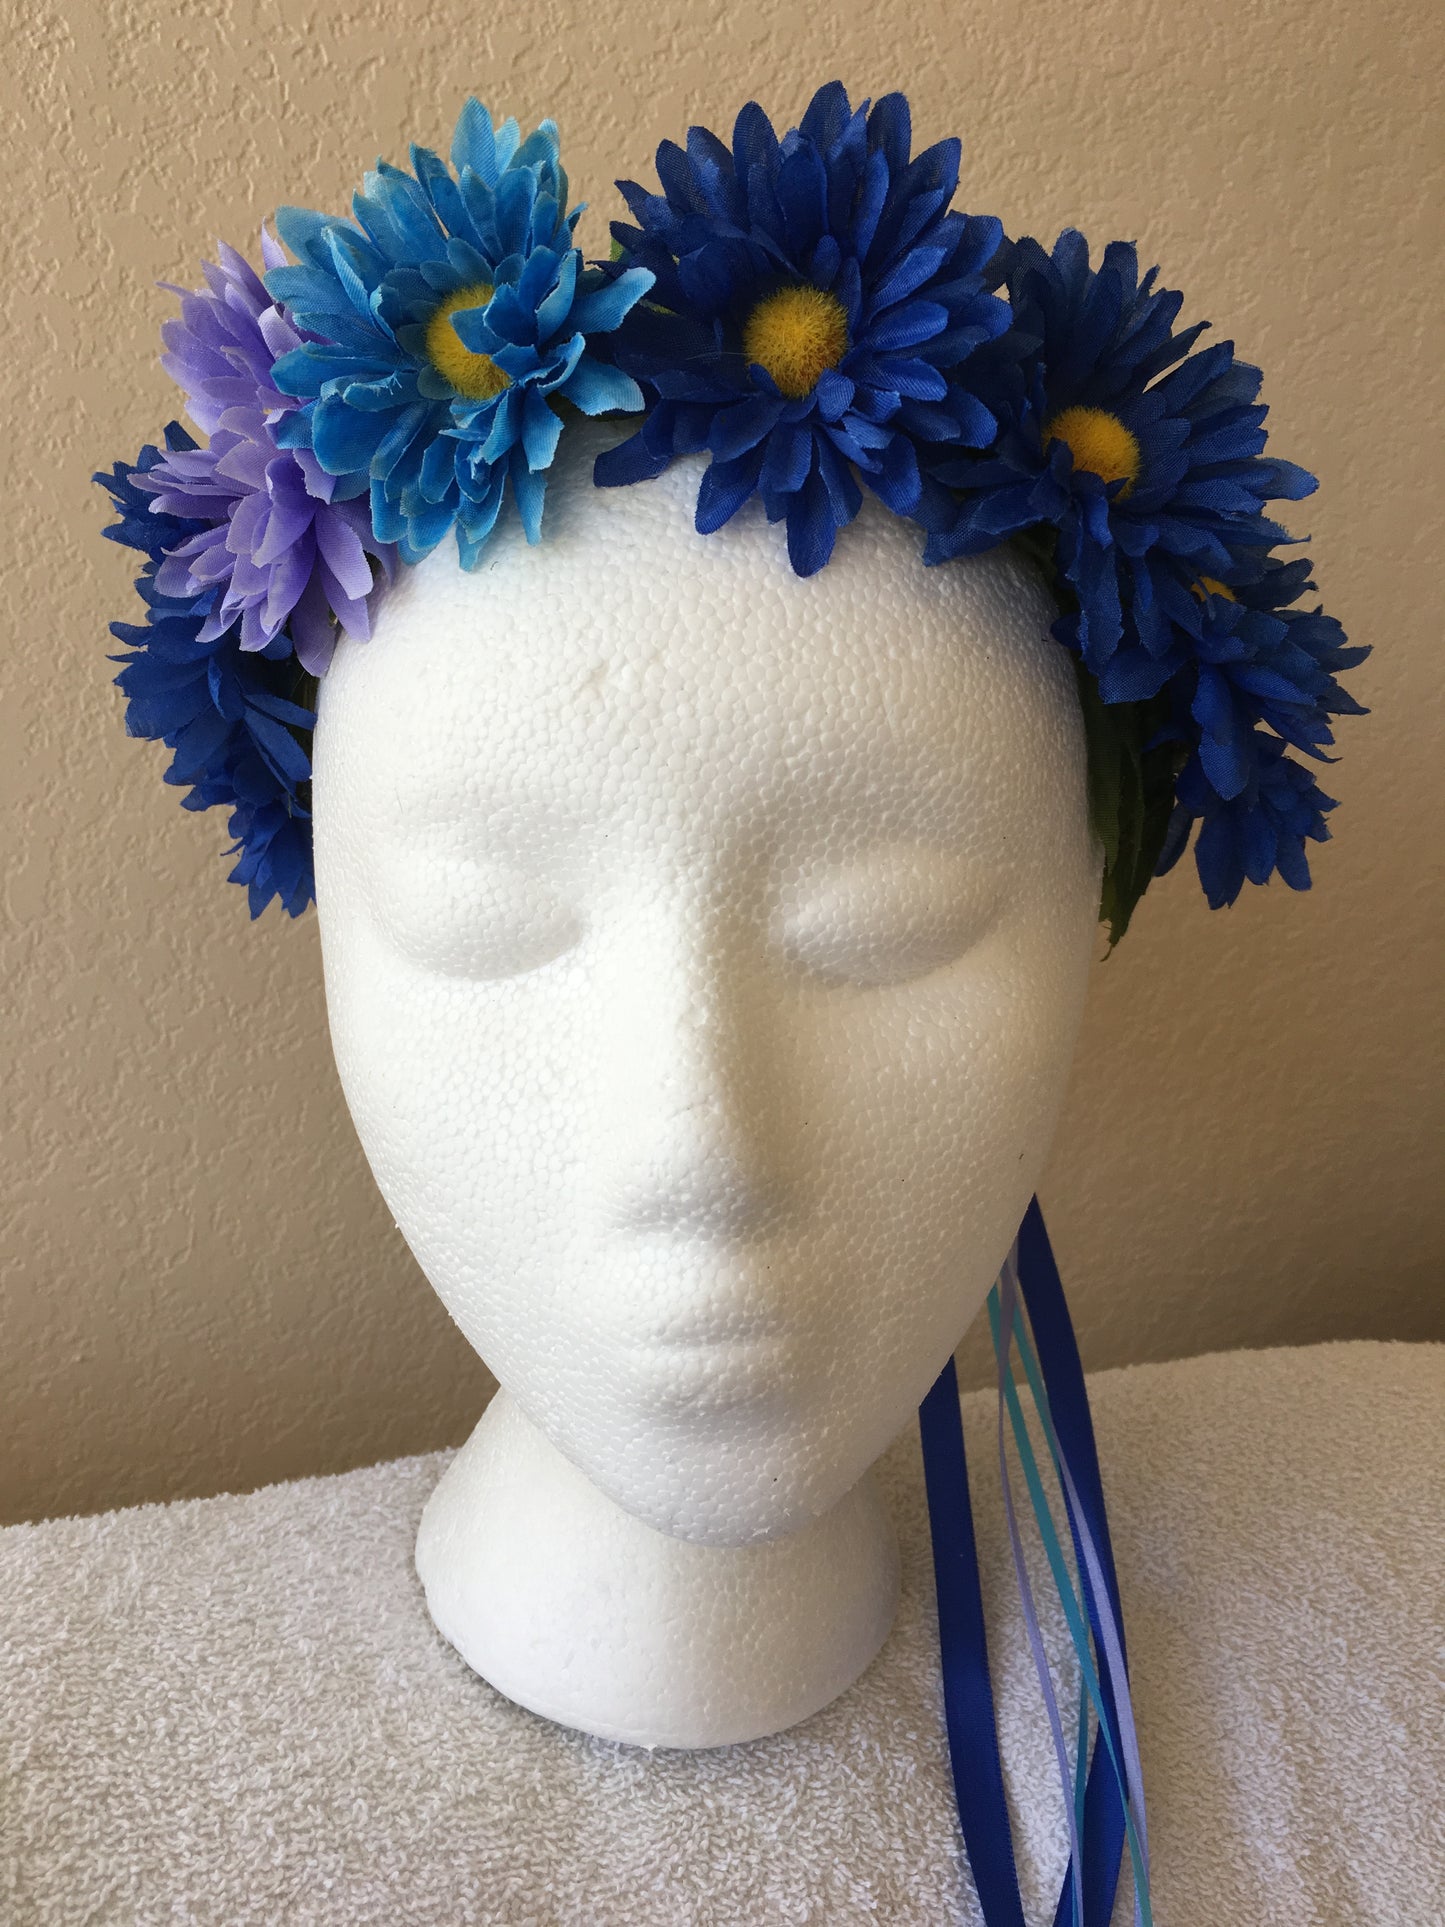 Small Wreath - Dark blue daisies w/ a purple & light blue accent daisies